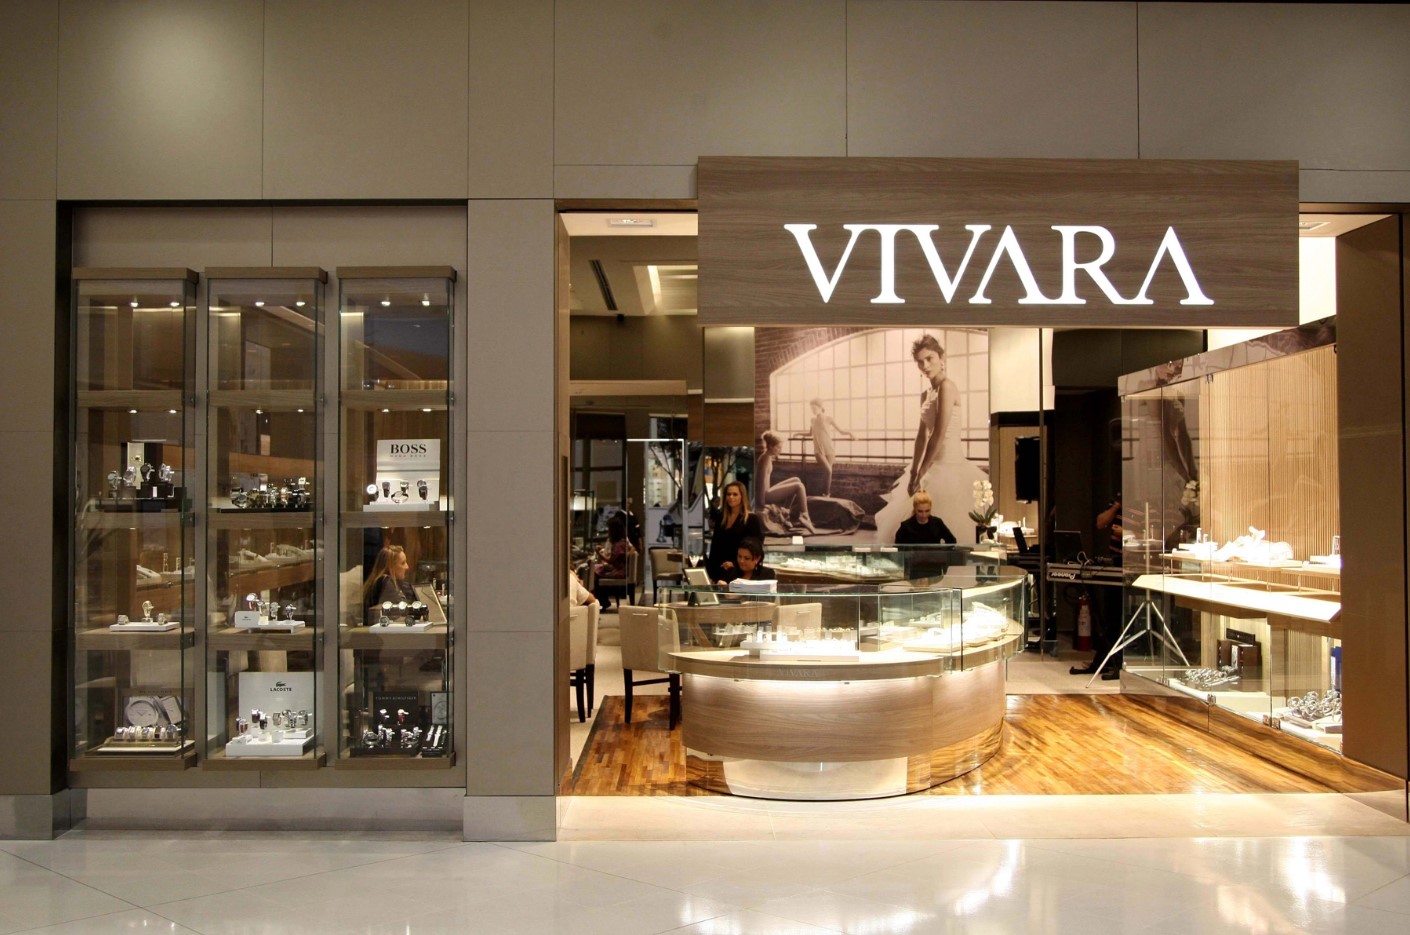 Vivara é uma das principais marcas de jóias do Brasil. Foto: Divulgação